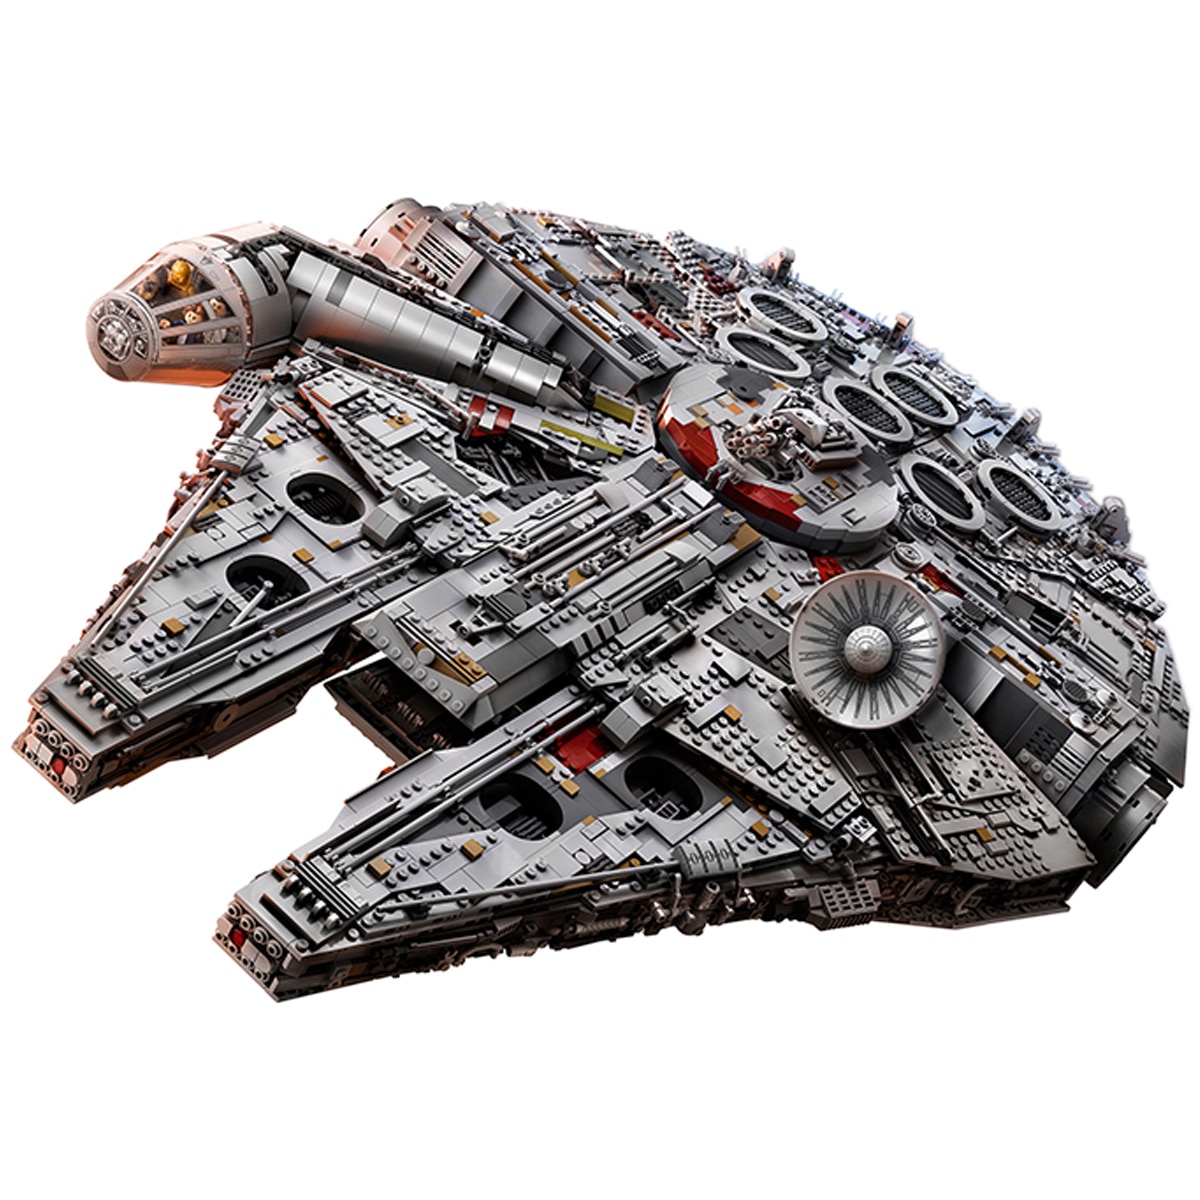 Lego Star Wars Millennium Falcon 75192